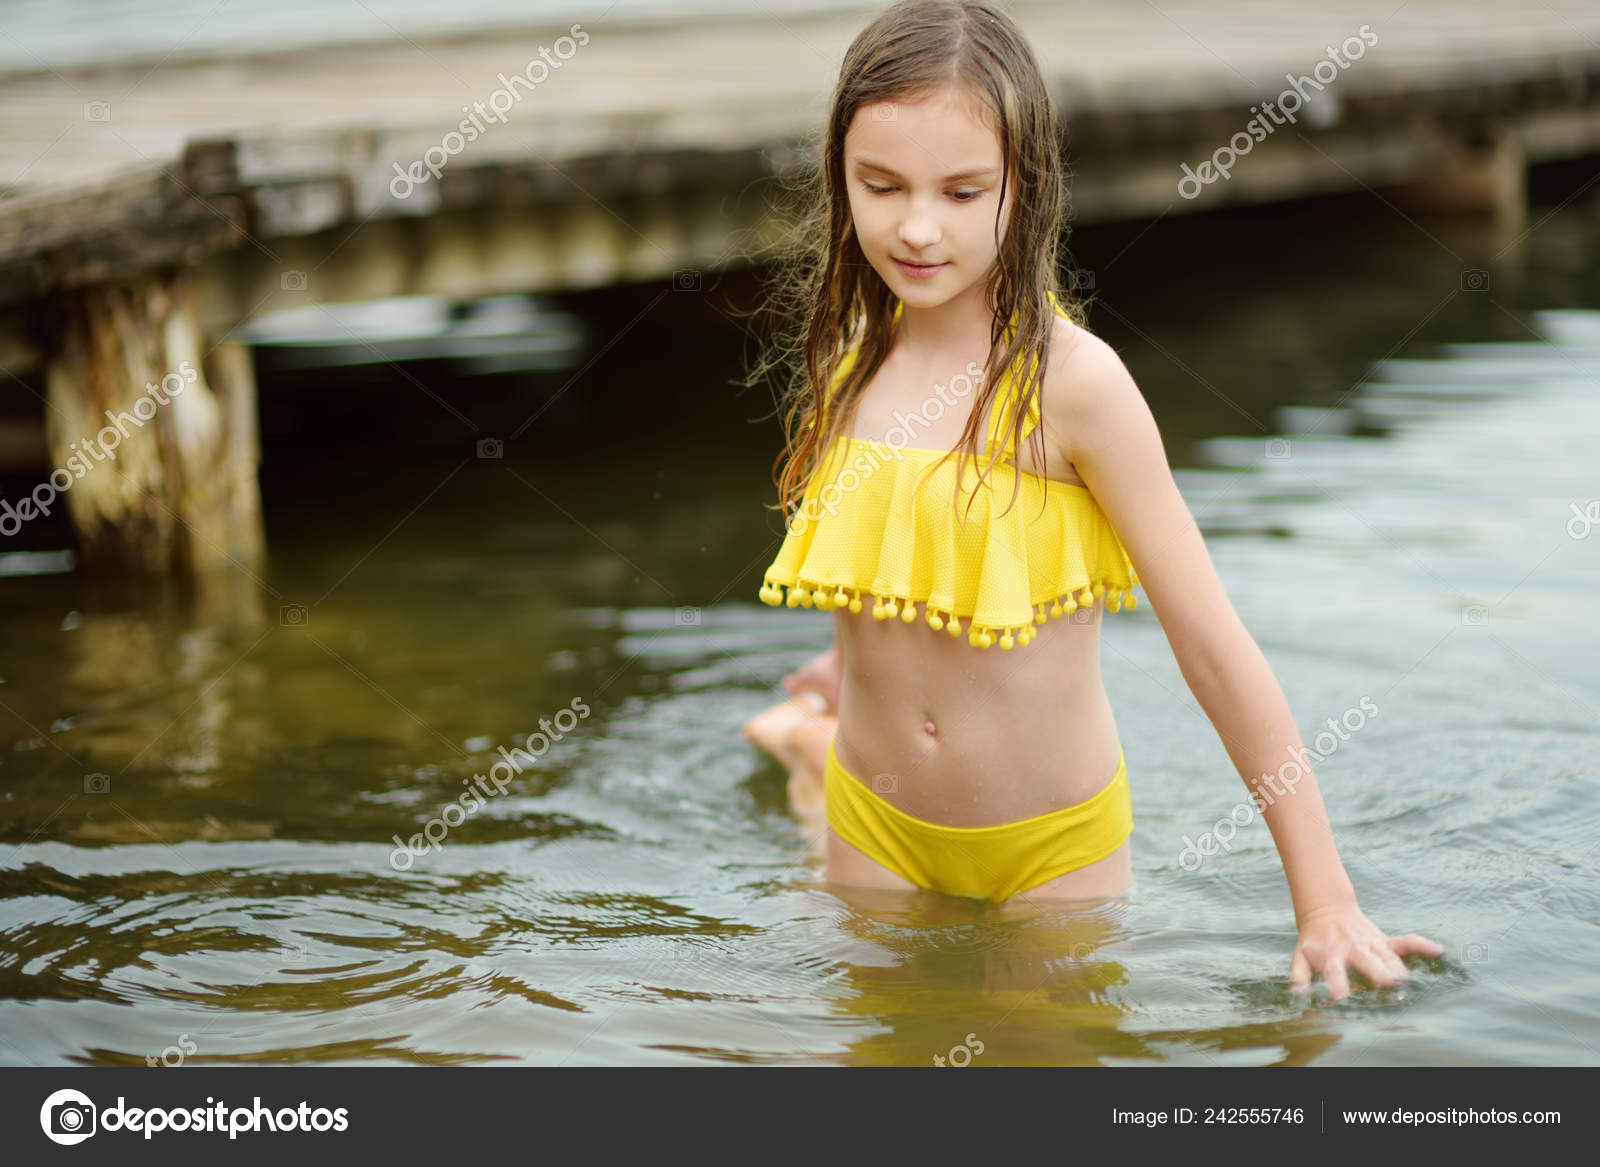 Girl in river Photos